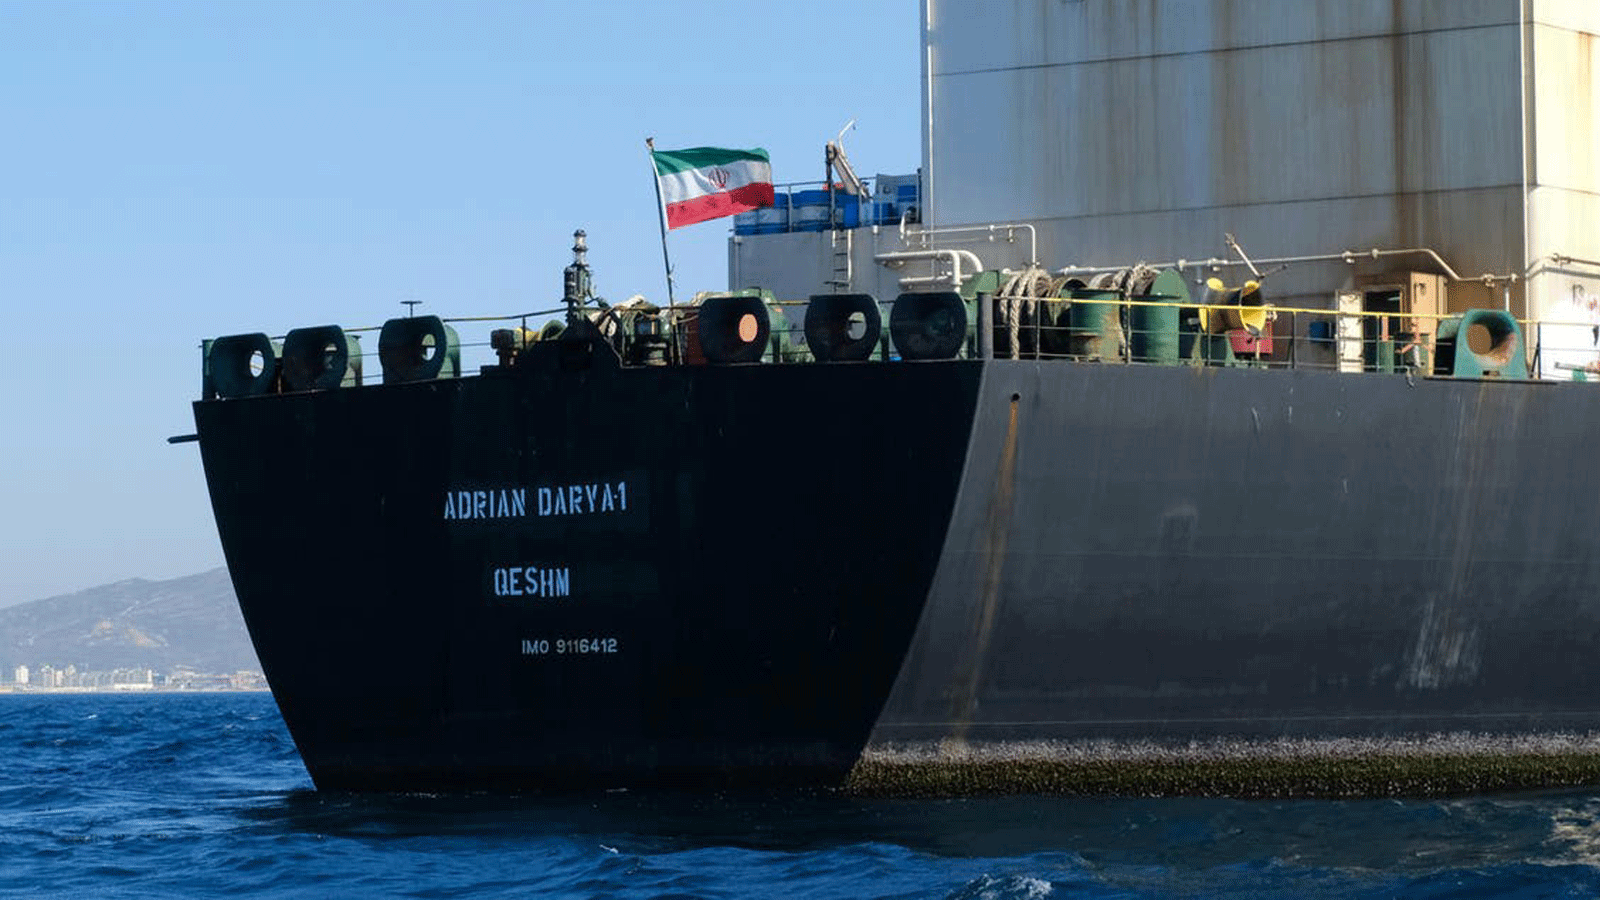 ناقلة النفط أدريان داريا 1 التي بيعت إلى جانب 2.1 مليون برميل من النفط الخام لمشتر لم يذكر_ المتحدث باسم الحكومة الإيرانية_ اسمه في آب 2019